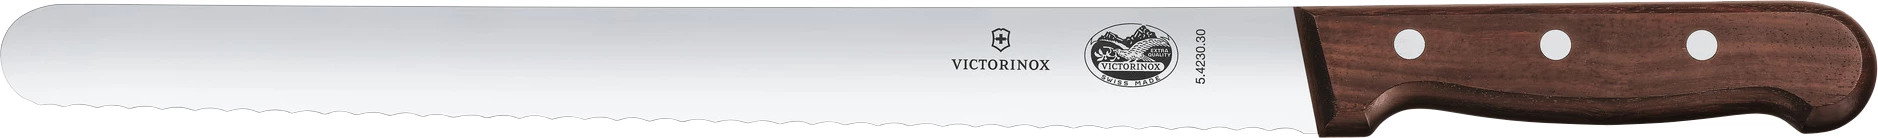 Victorinox brødkniv med træskaft, buet, 25 cm